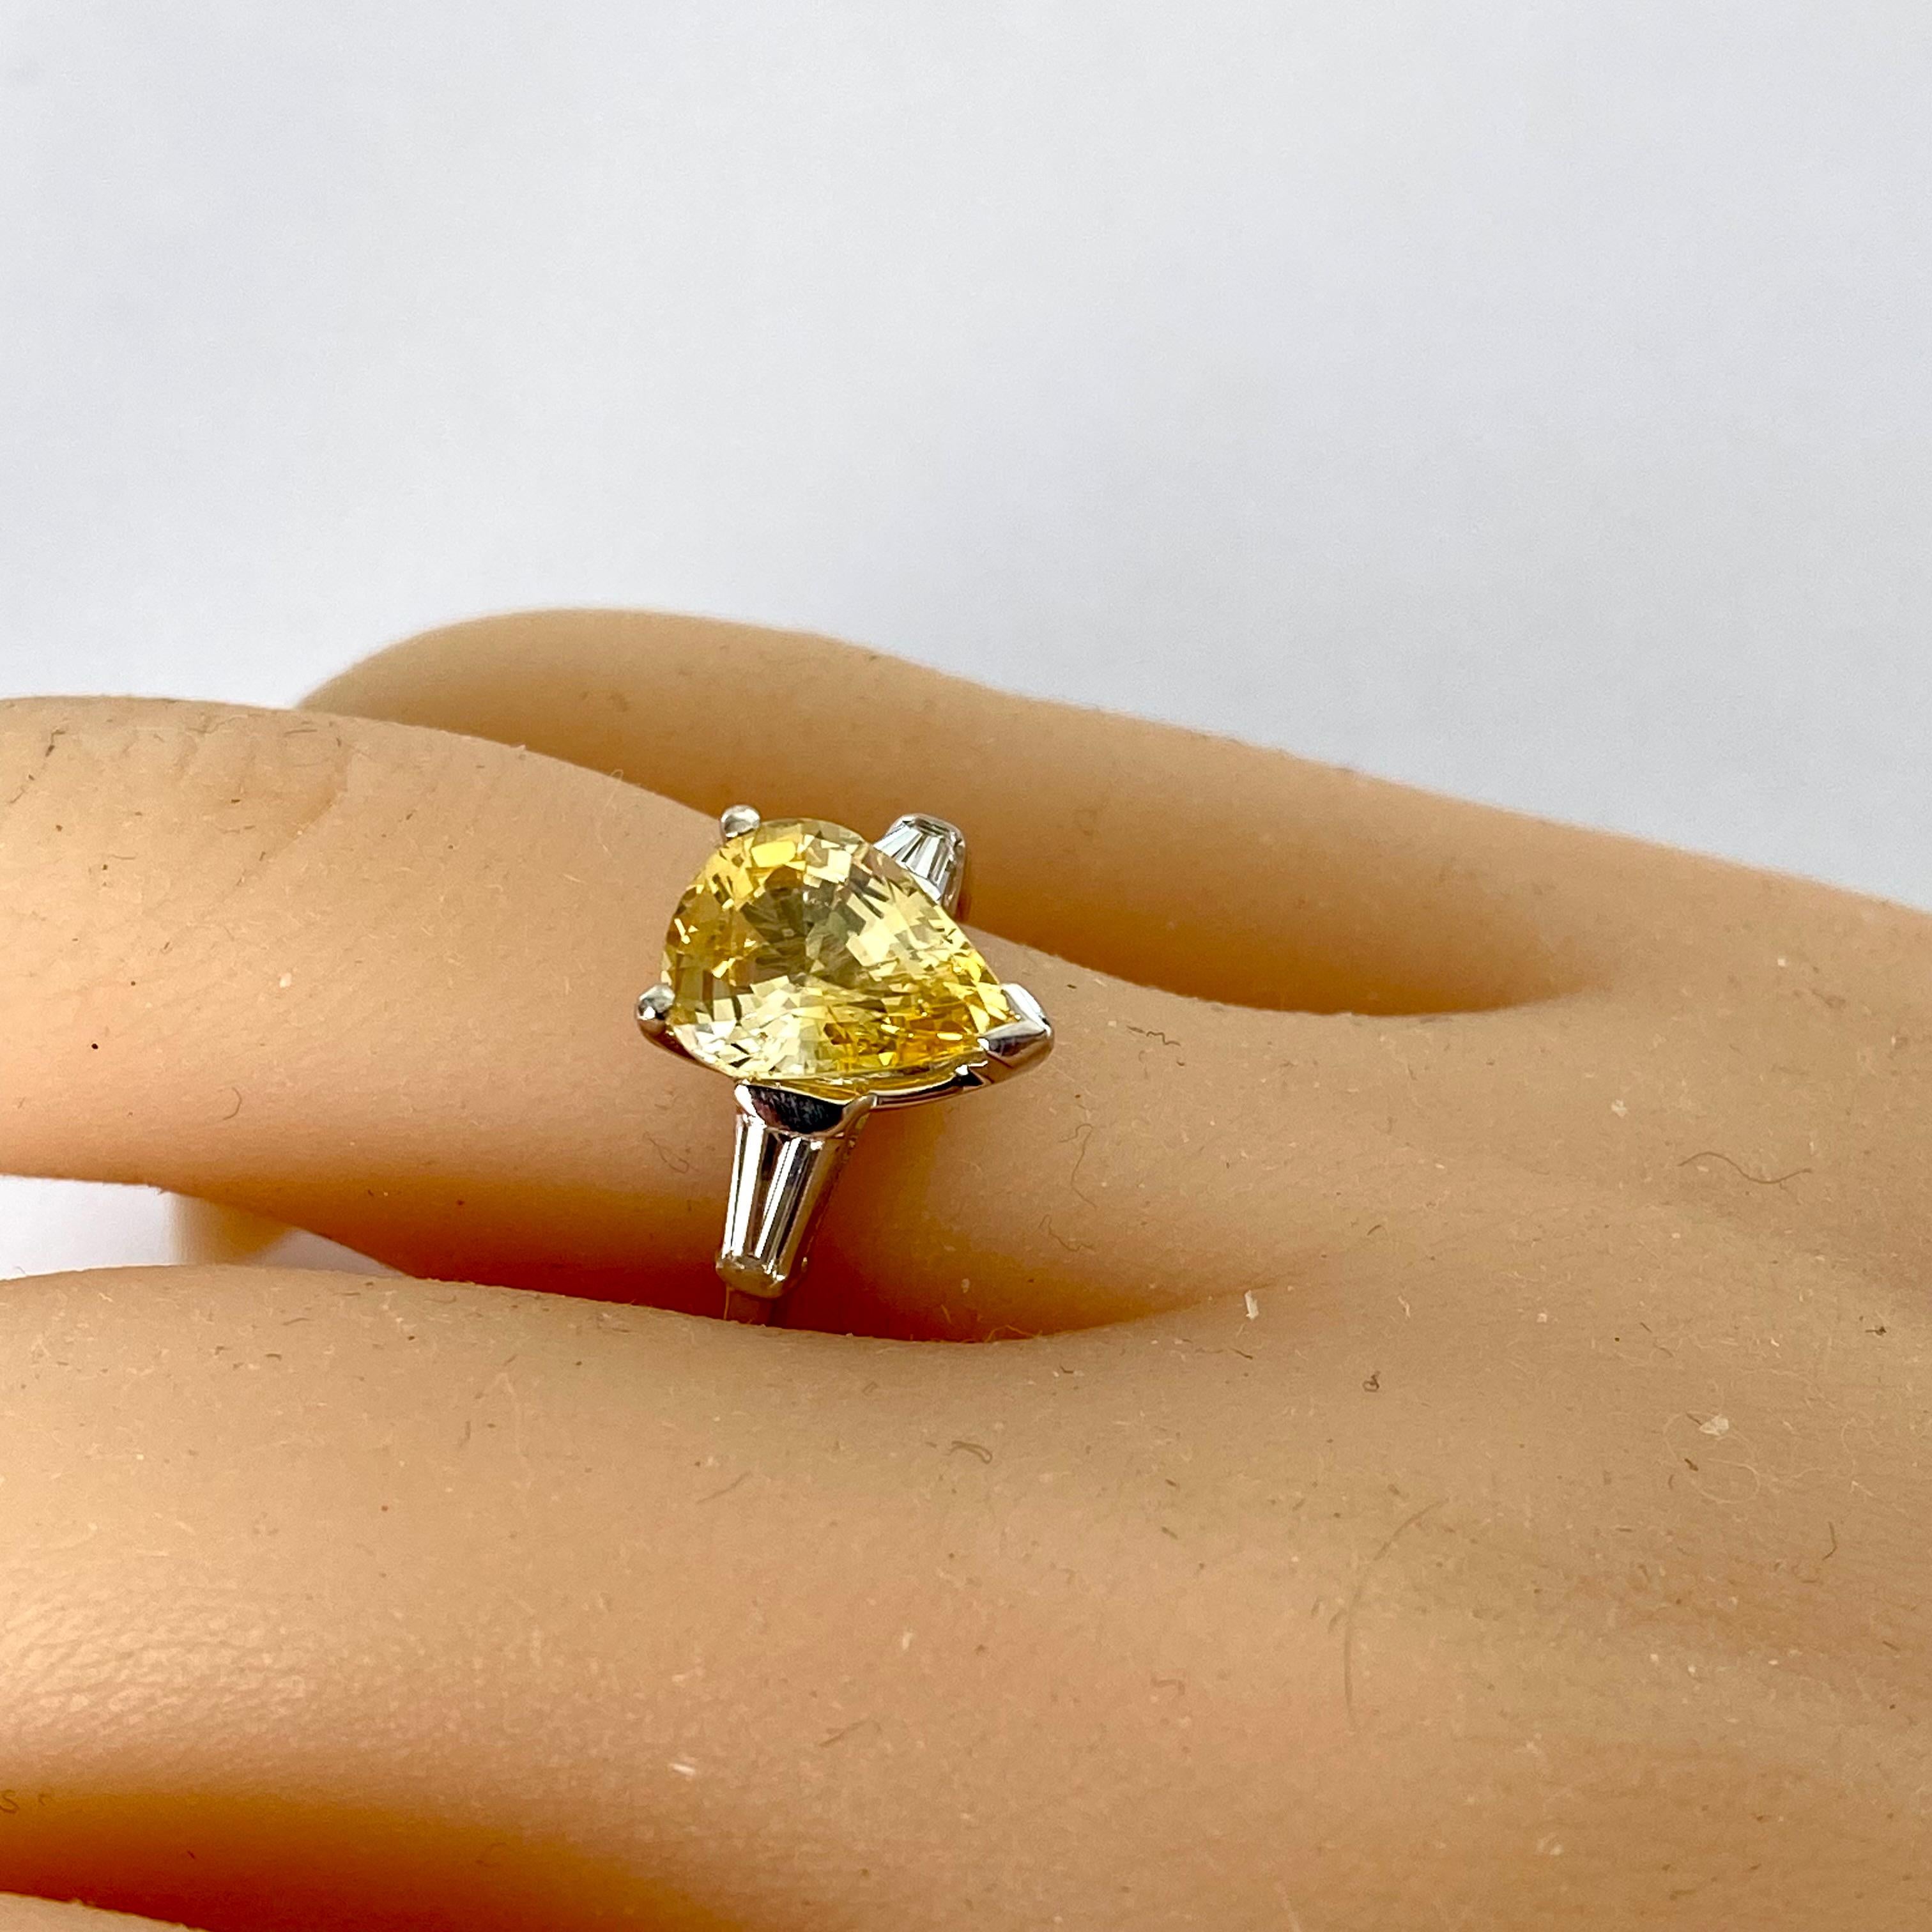 Dieser exquisite Verlobungsring aus Platin mit einem atemberaubenden gelben Ceylon-Saphir in Birnenform und zwei schillernden Baguette-Diamanten verleiht Ihrer Liebesgeschichte eine ganz besondere Note. Dieser in Perfektion gefertigte Ring